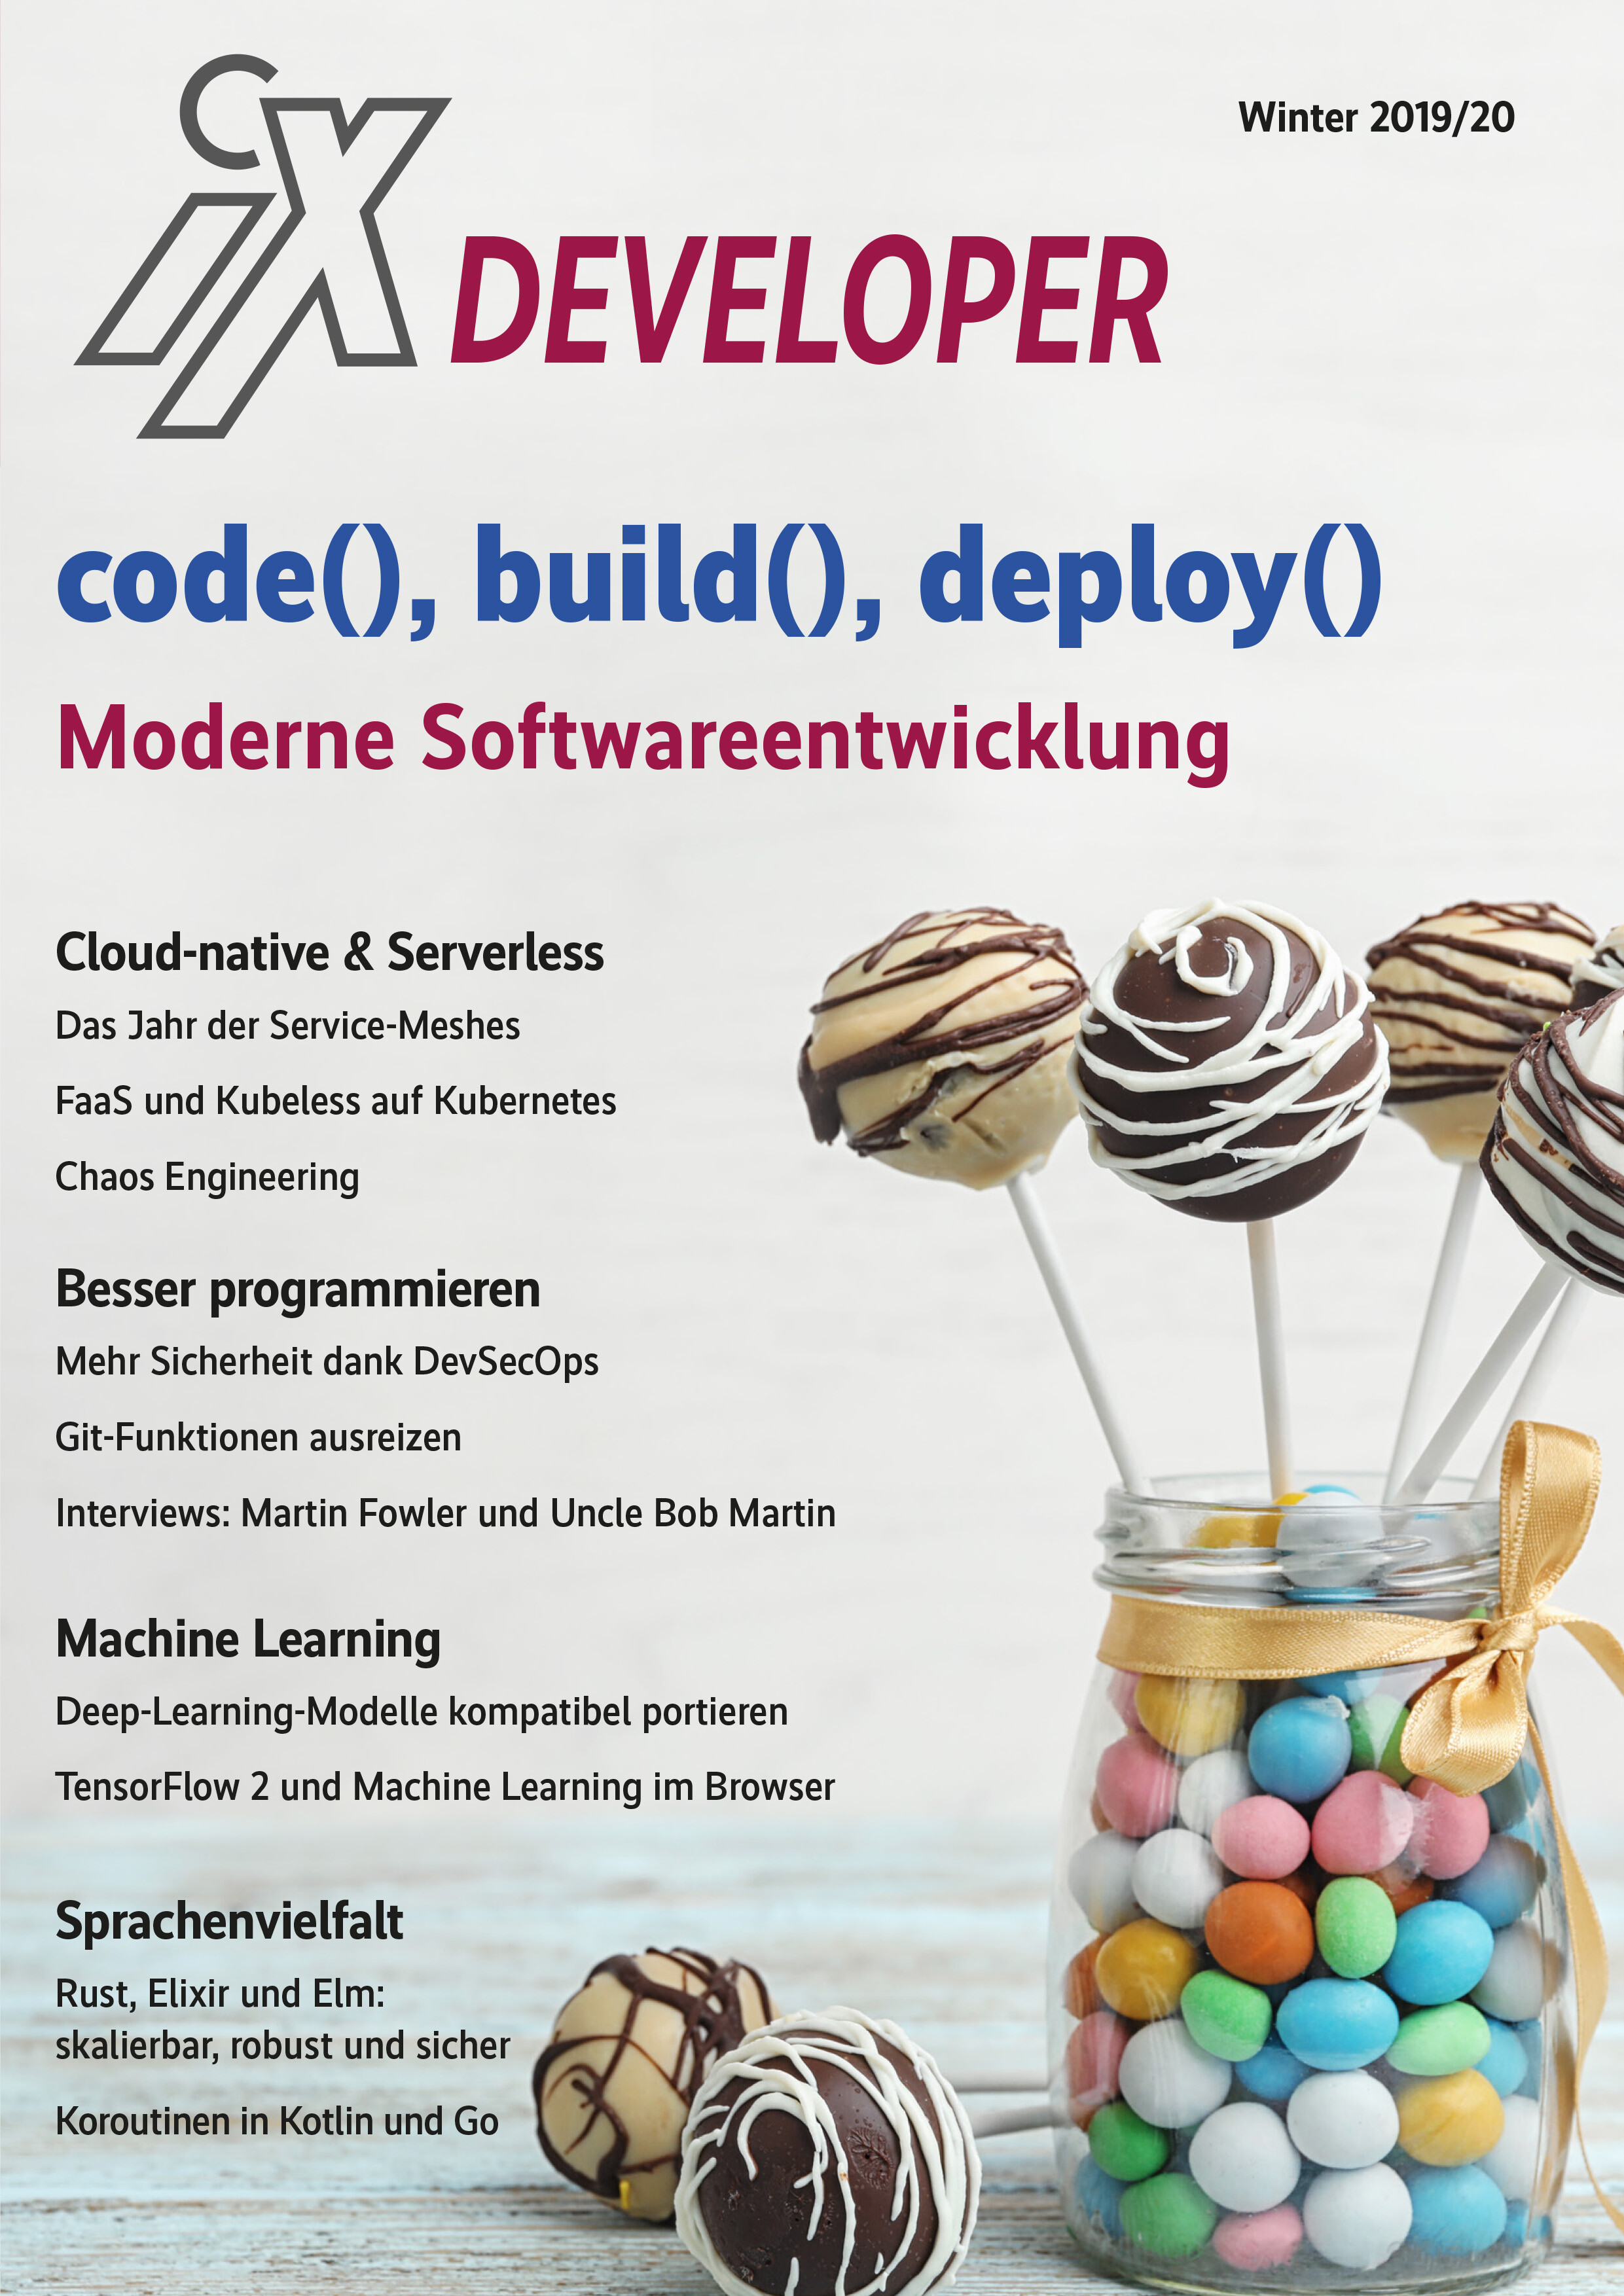 iX Developer - Moderne Softwareentwicklung